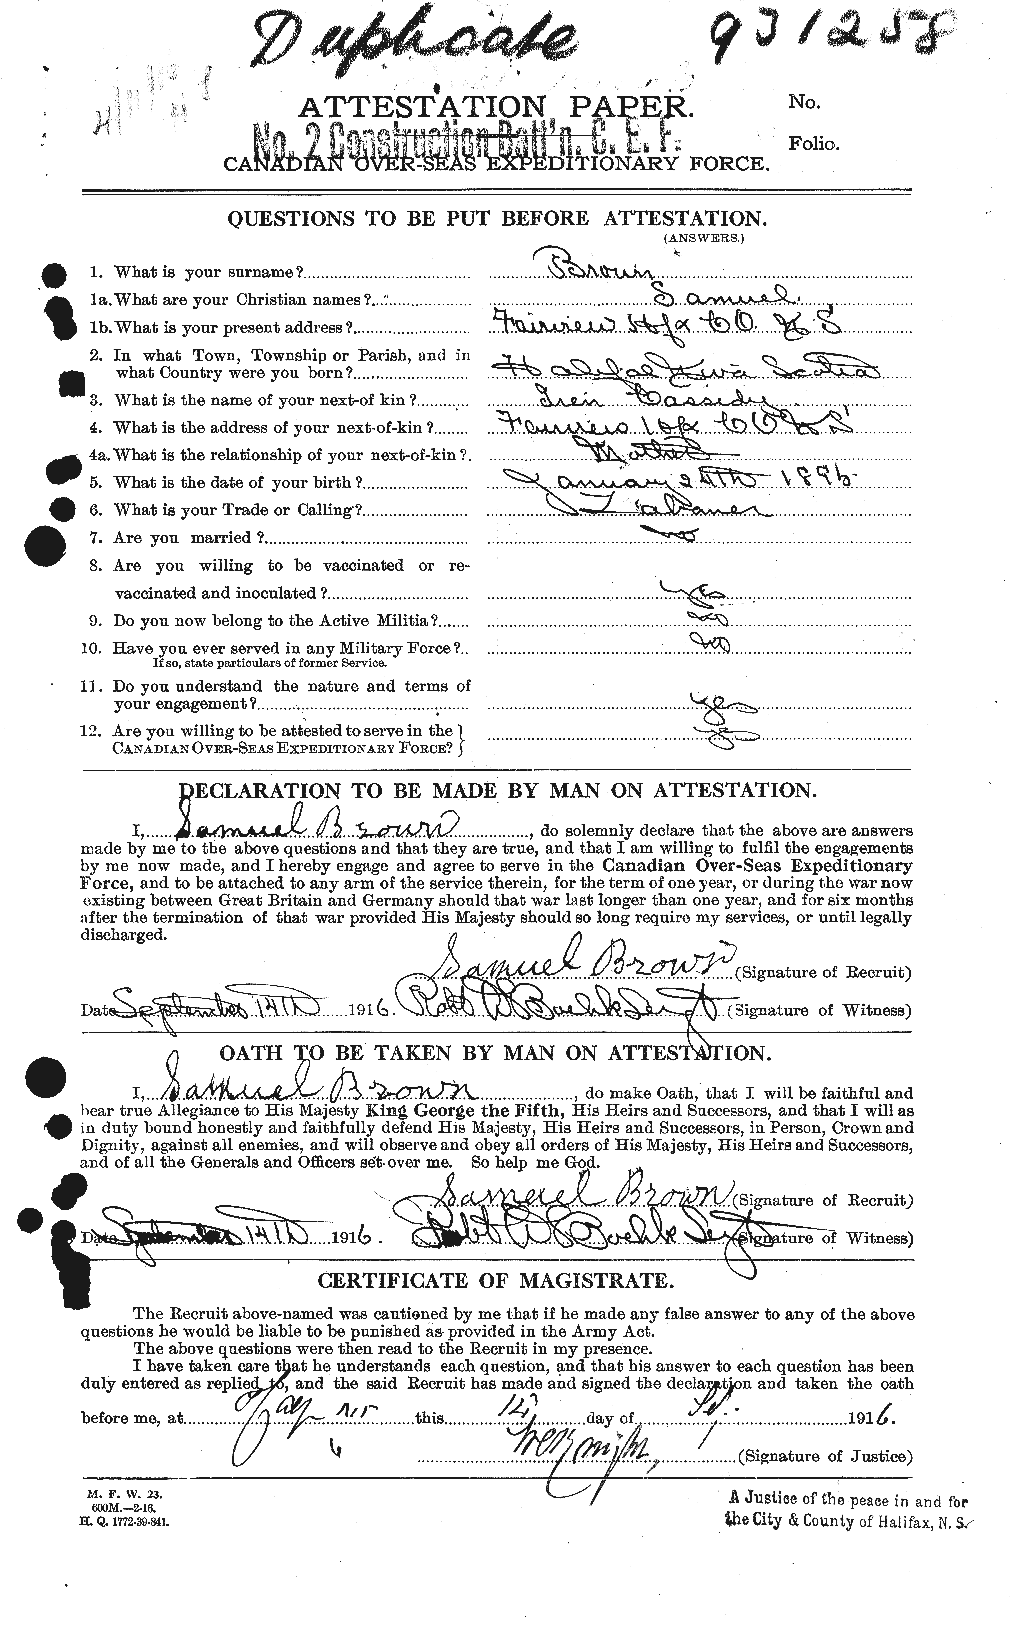 Dossiers du Personnel de la Première Guerre mondiale - CEC 266382a